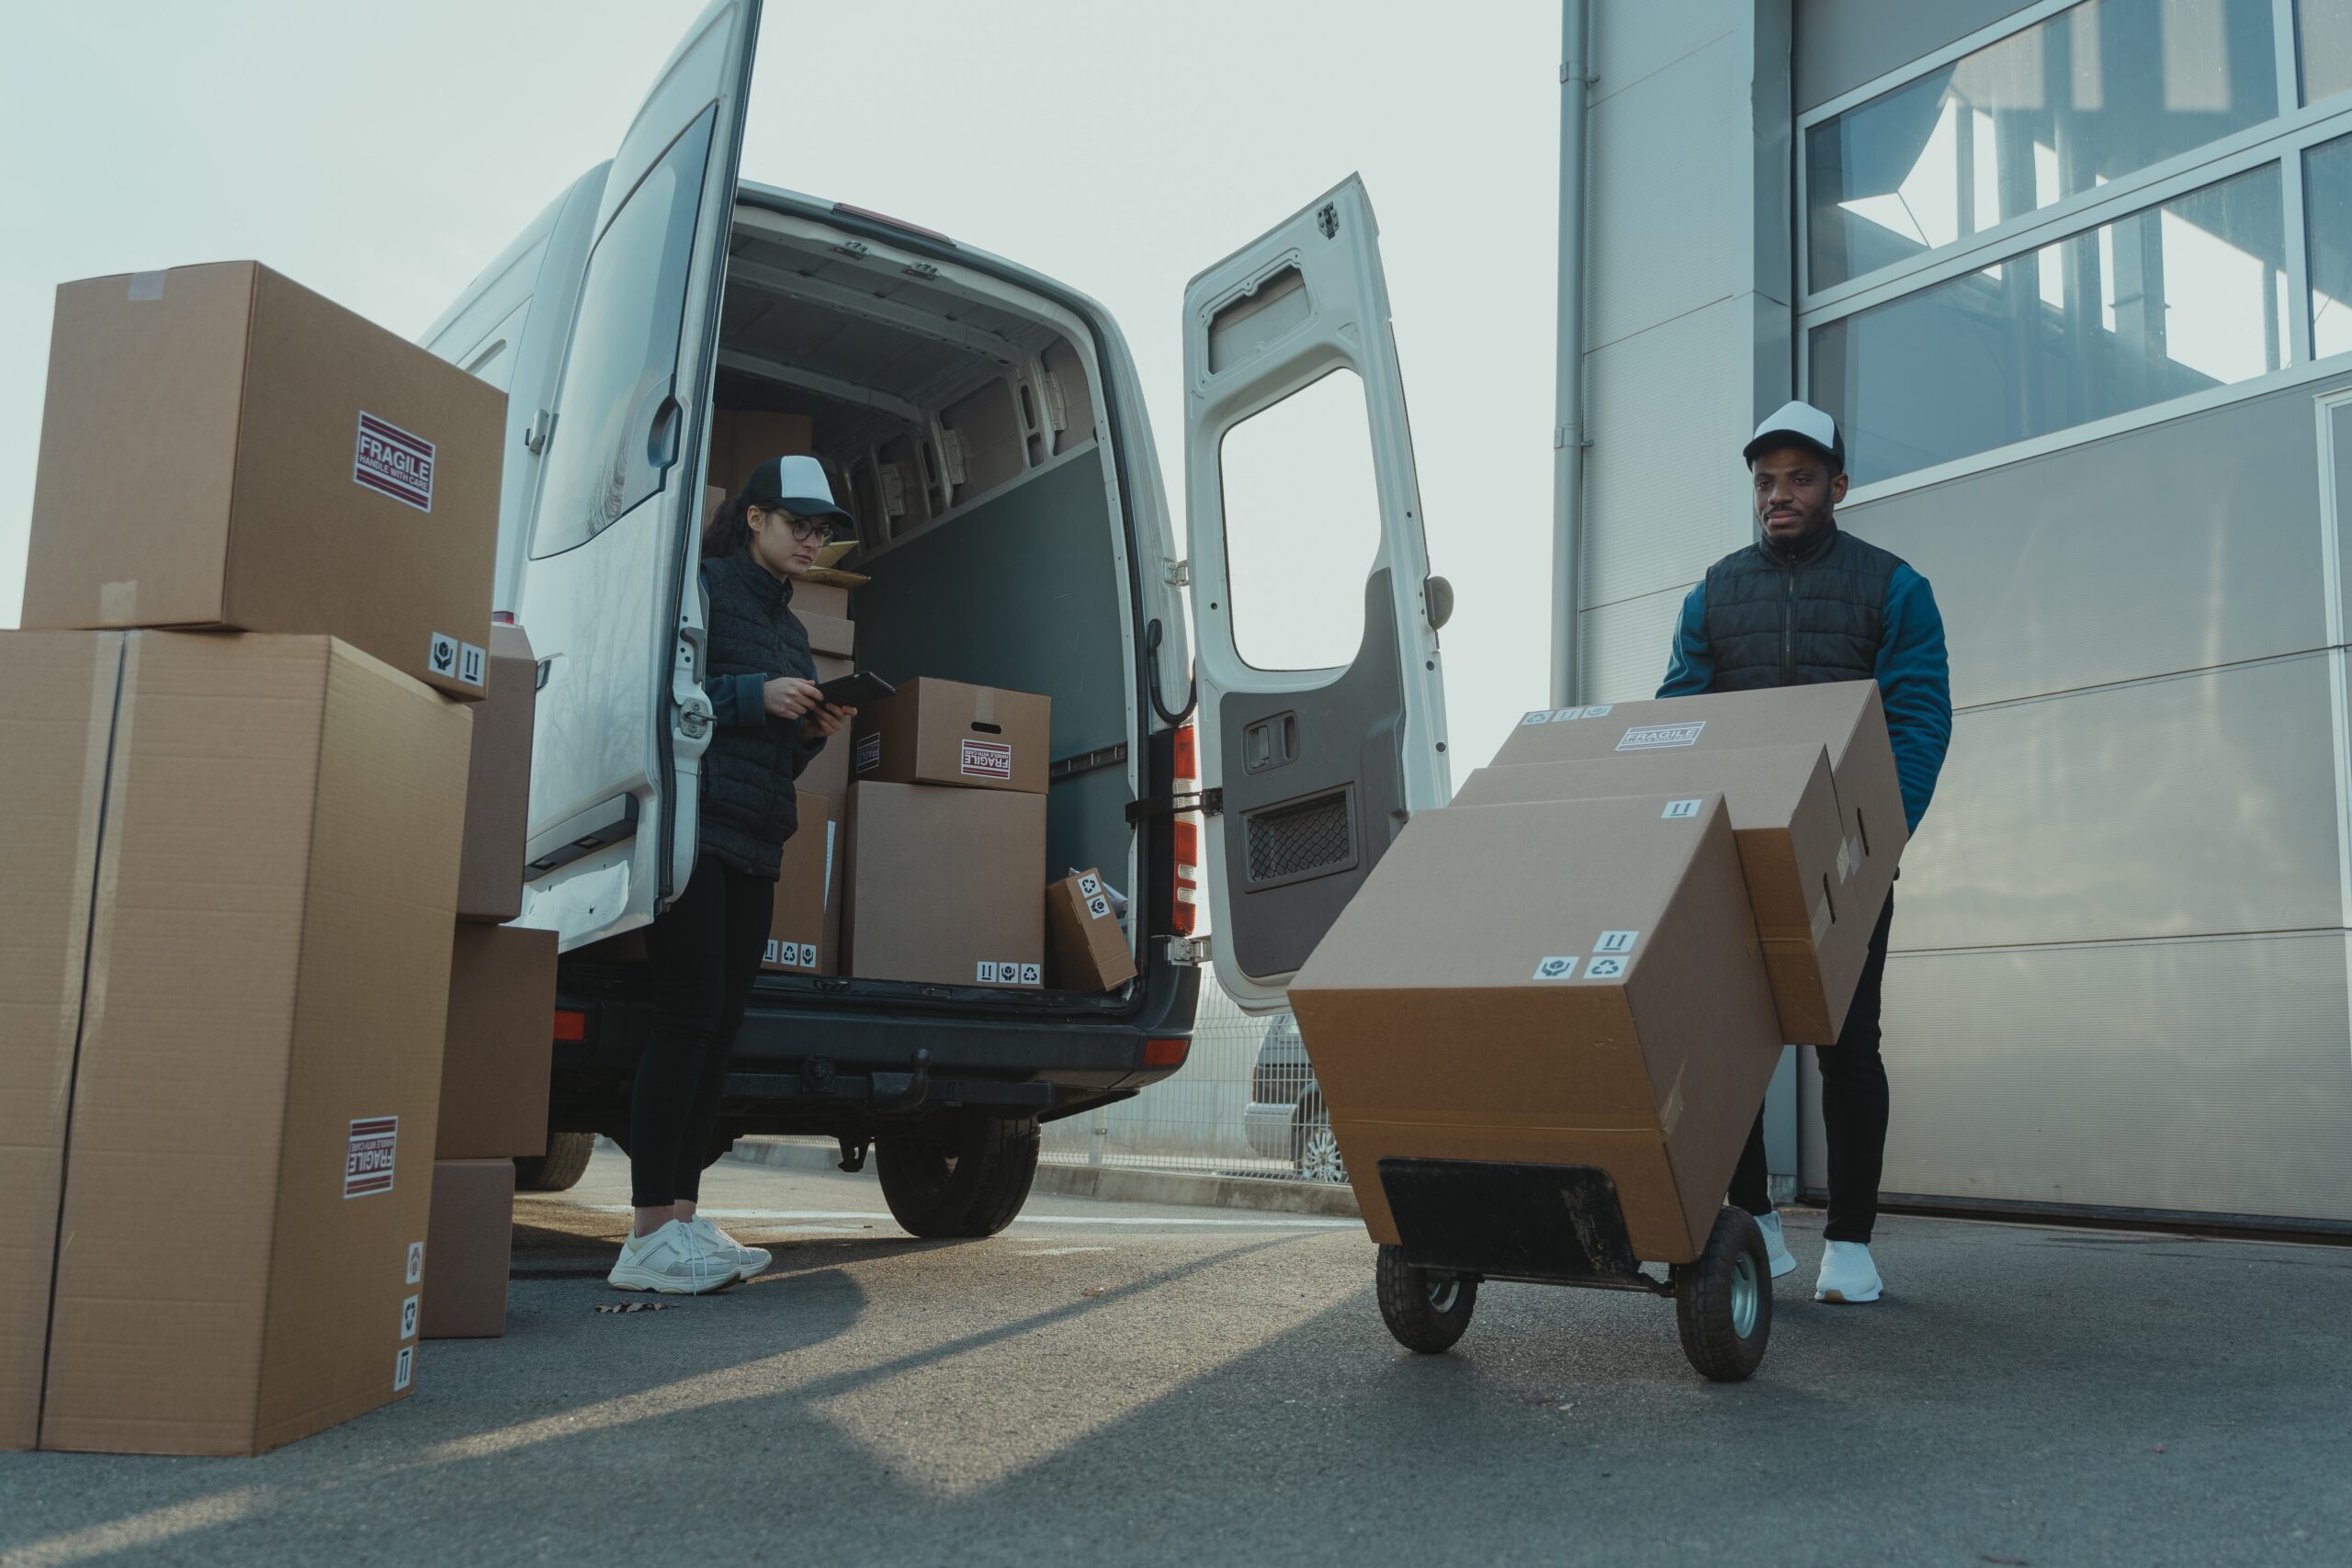 transportistas de empresa de envío cargando cajas para enviar en una furgoneta